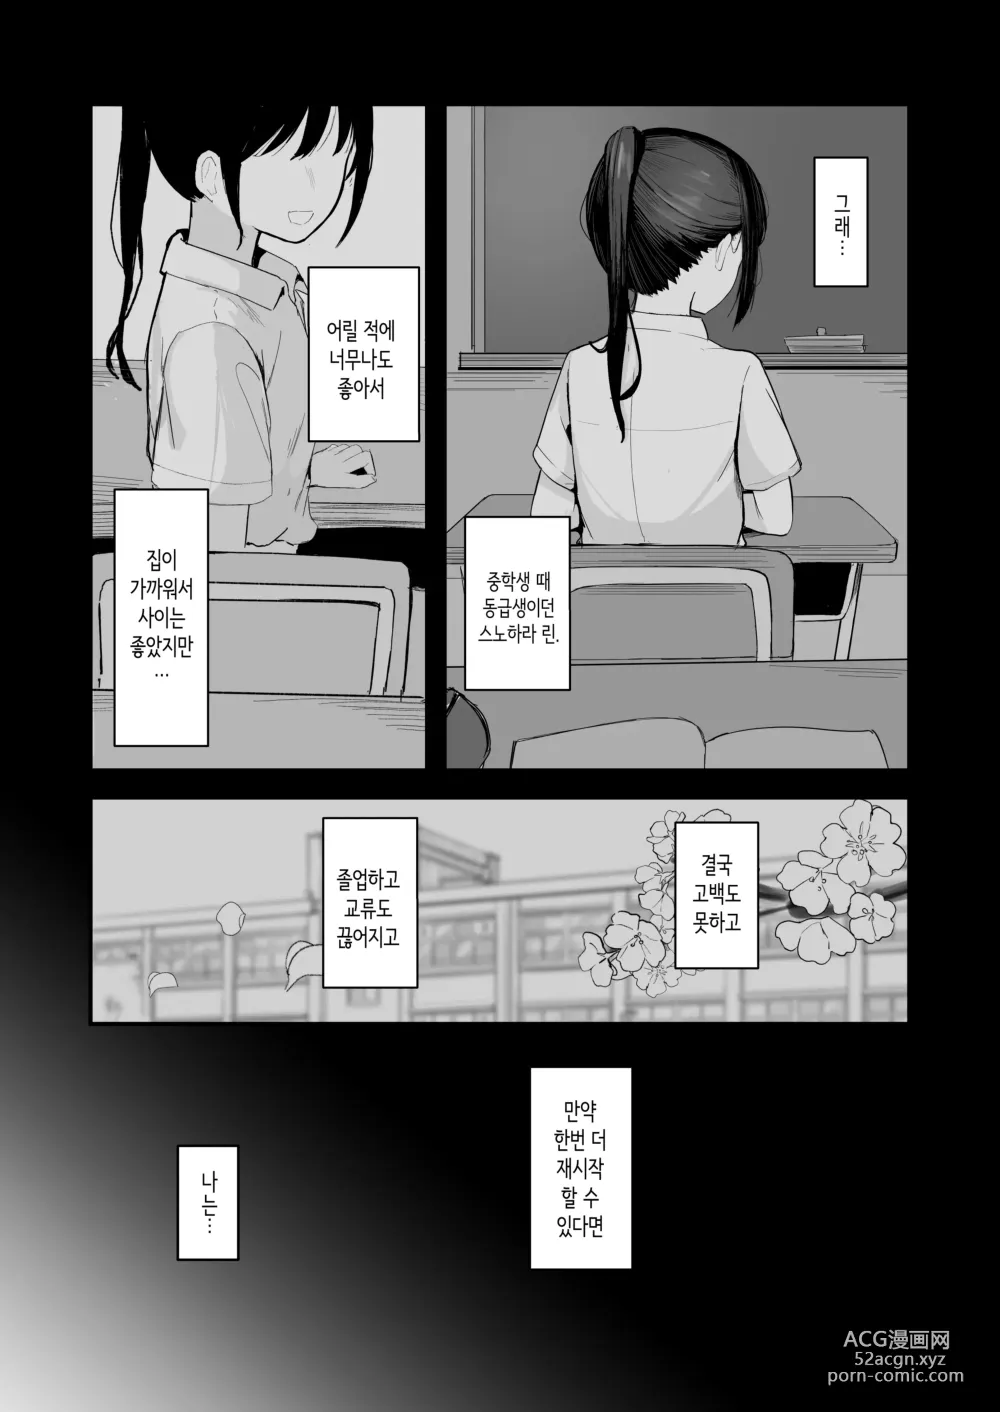 Page 5 of doujinshi 청춘을 재시작할 수 있다면 이번에야말로 좋아했던 동급생과 사귀어서 반드시 미친듯이 섹스하고 싶다.